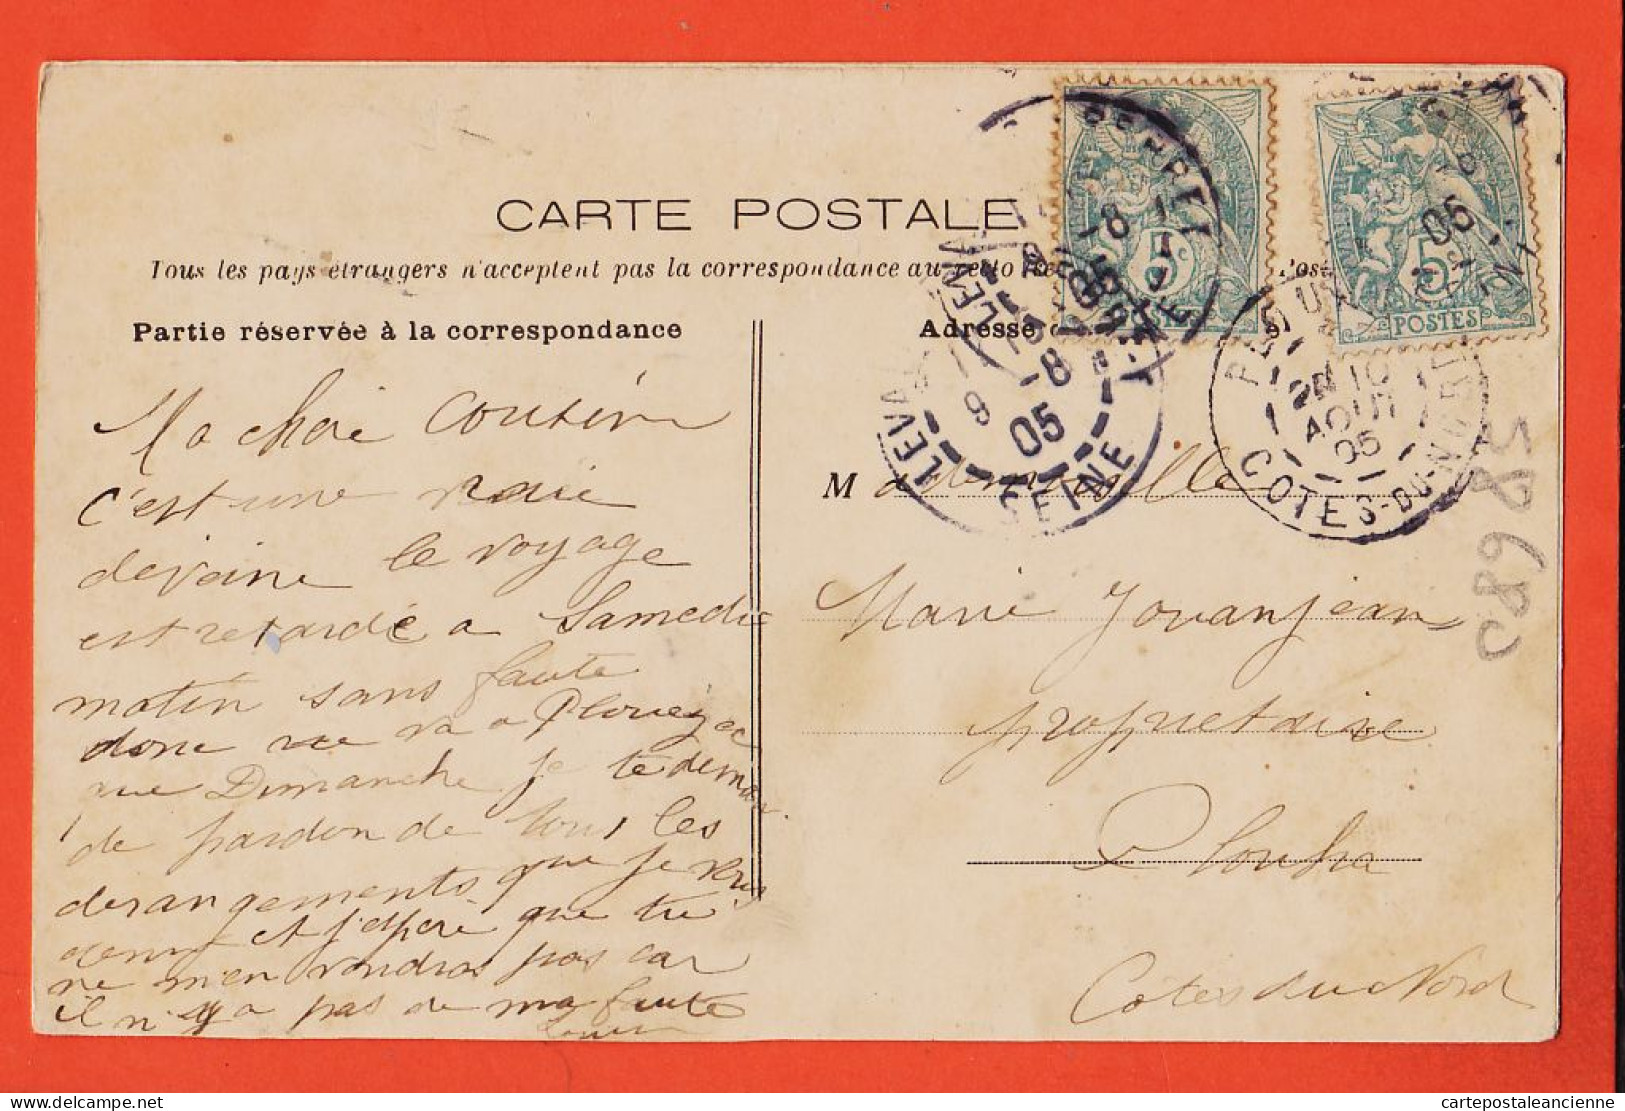 06055 / LEVALLOIS-PERRET (92) Pointe Ile GRANDE-JATTE Perspective 1905 à JOUANJEAN Propriétaire Plouha SEINE A-D 20 - Levallois Perret